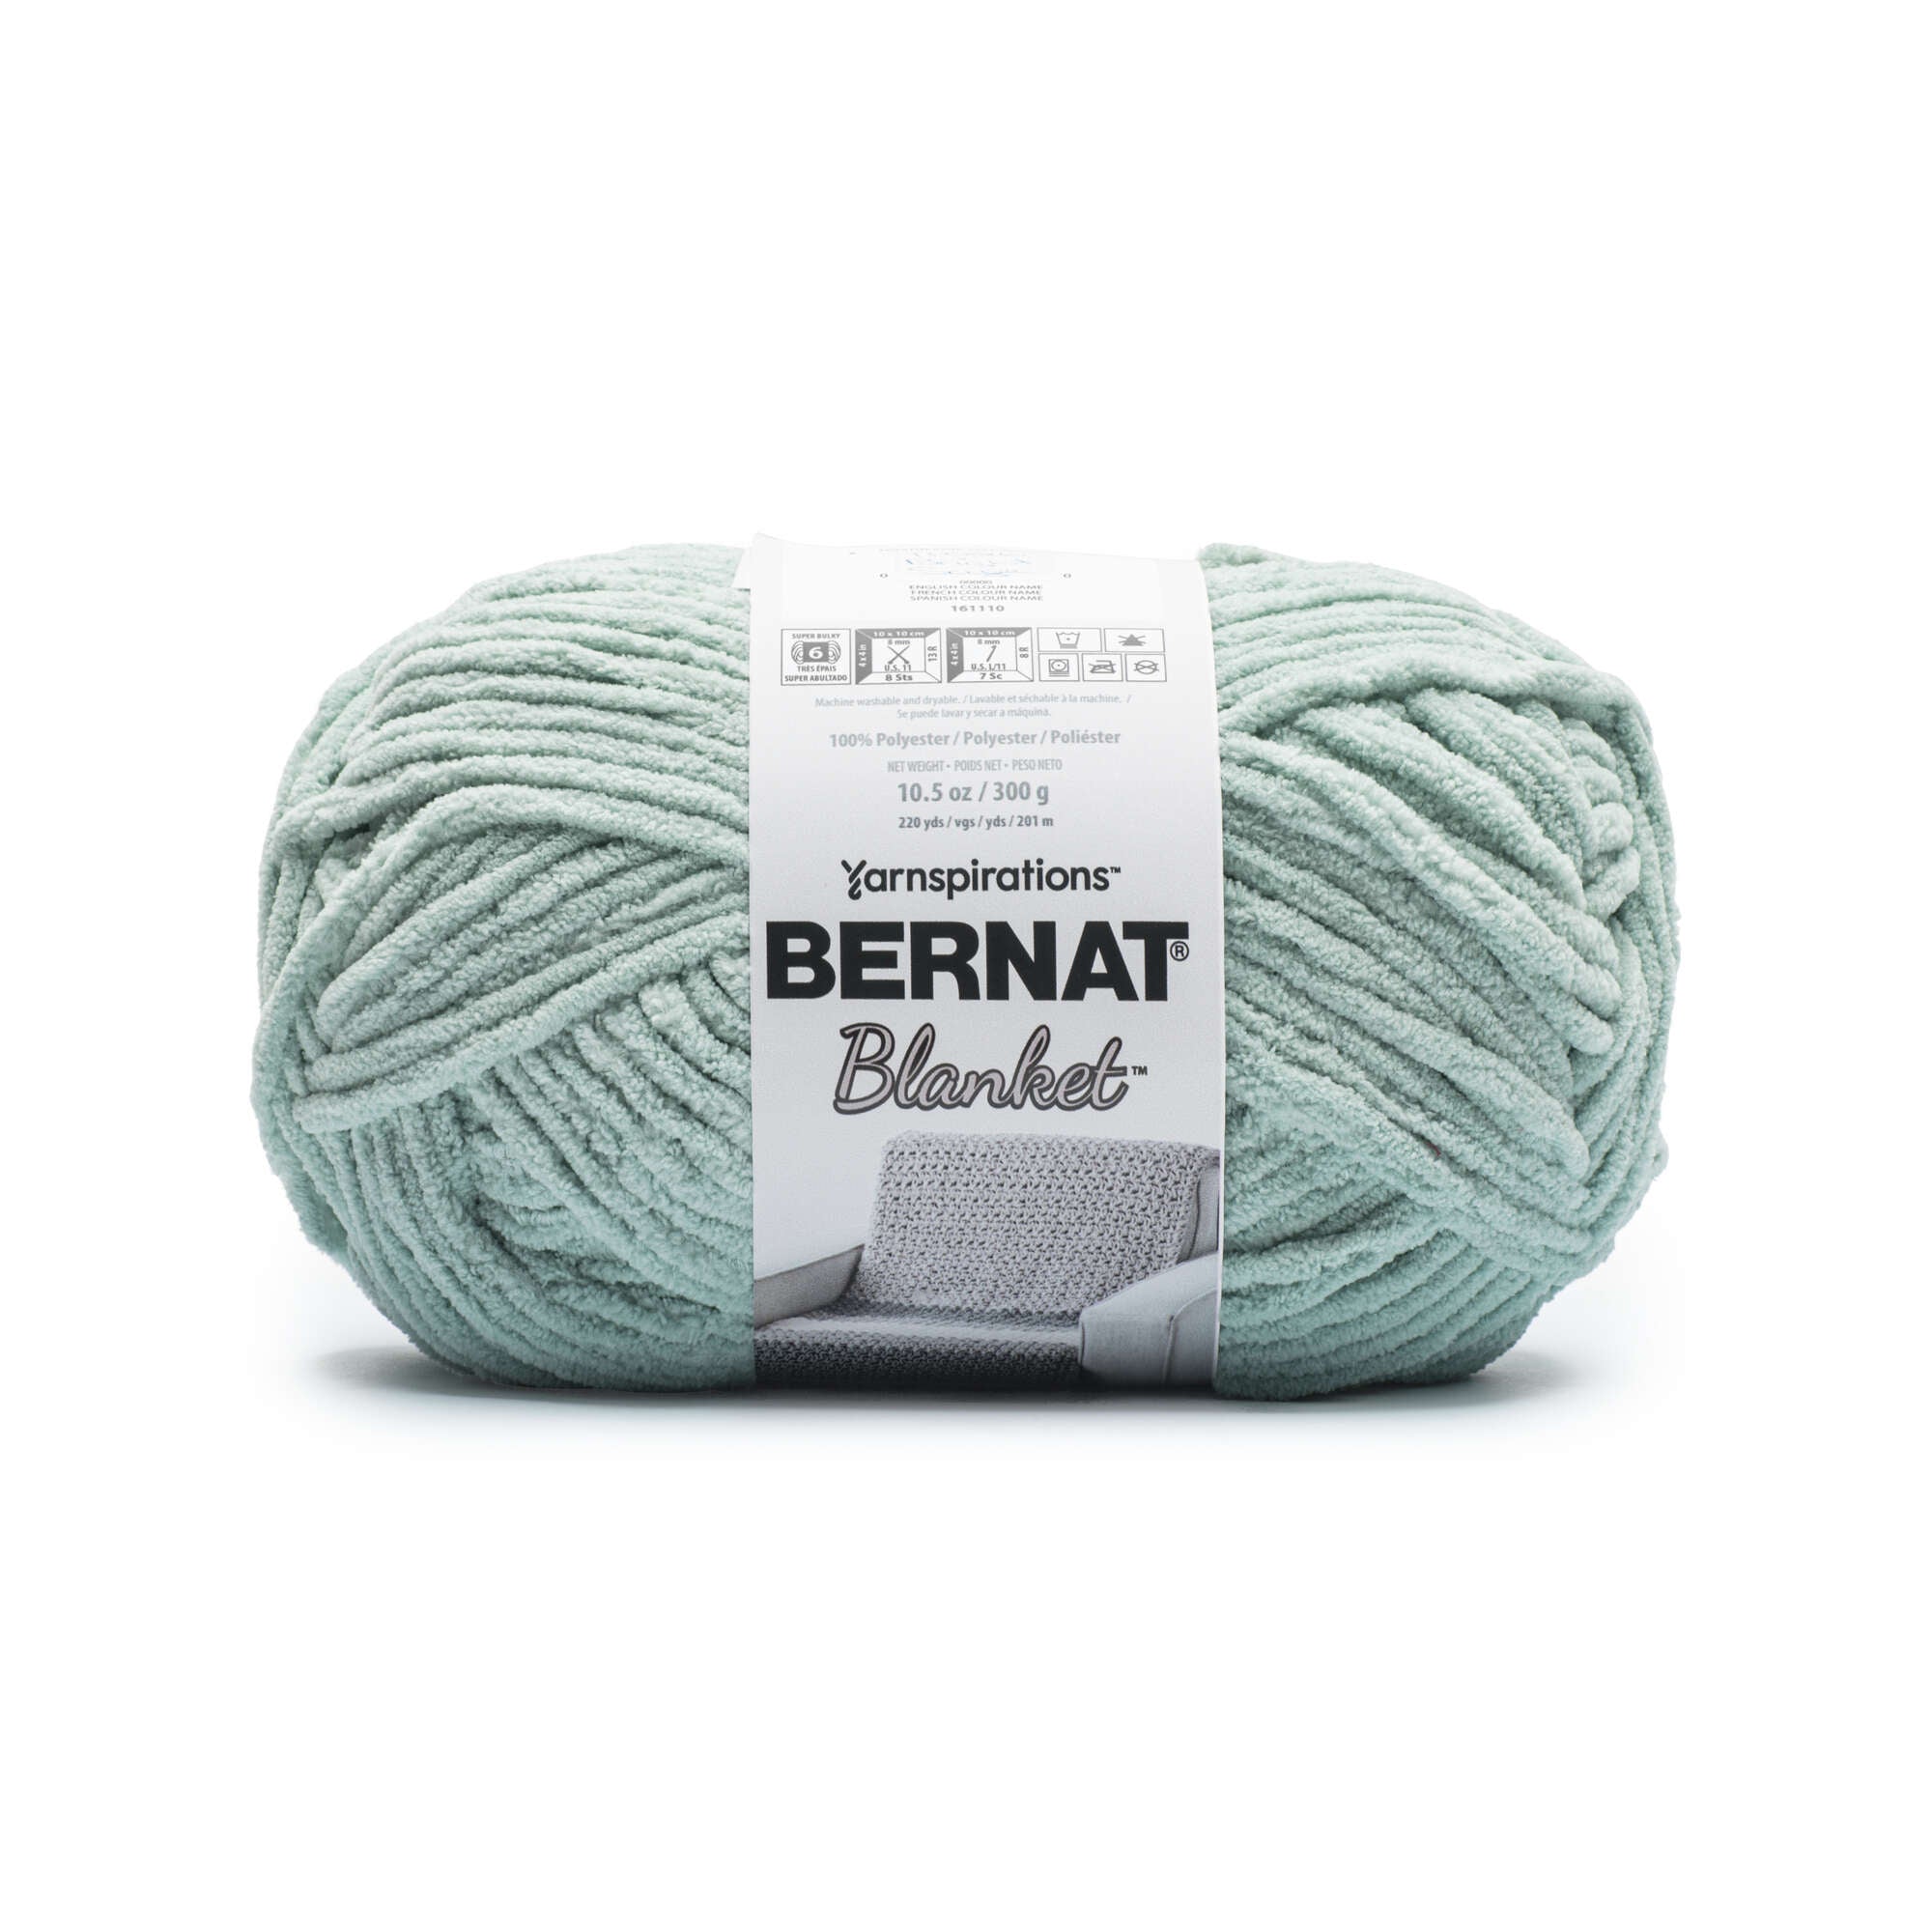 Bernat Big Ball Blanket Yarn - Fog Twist